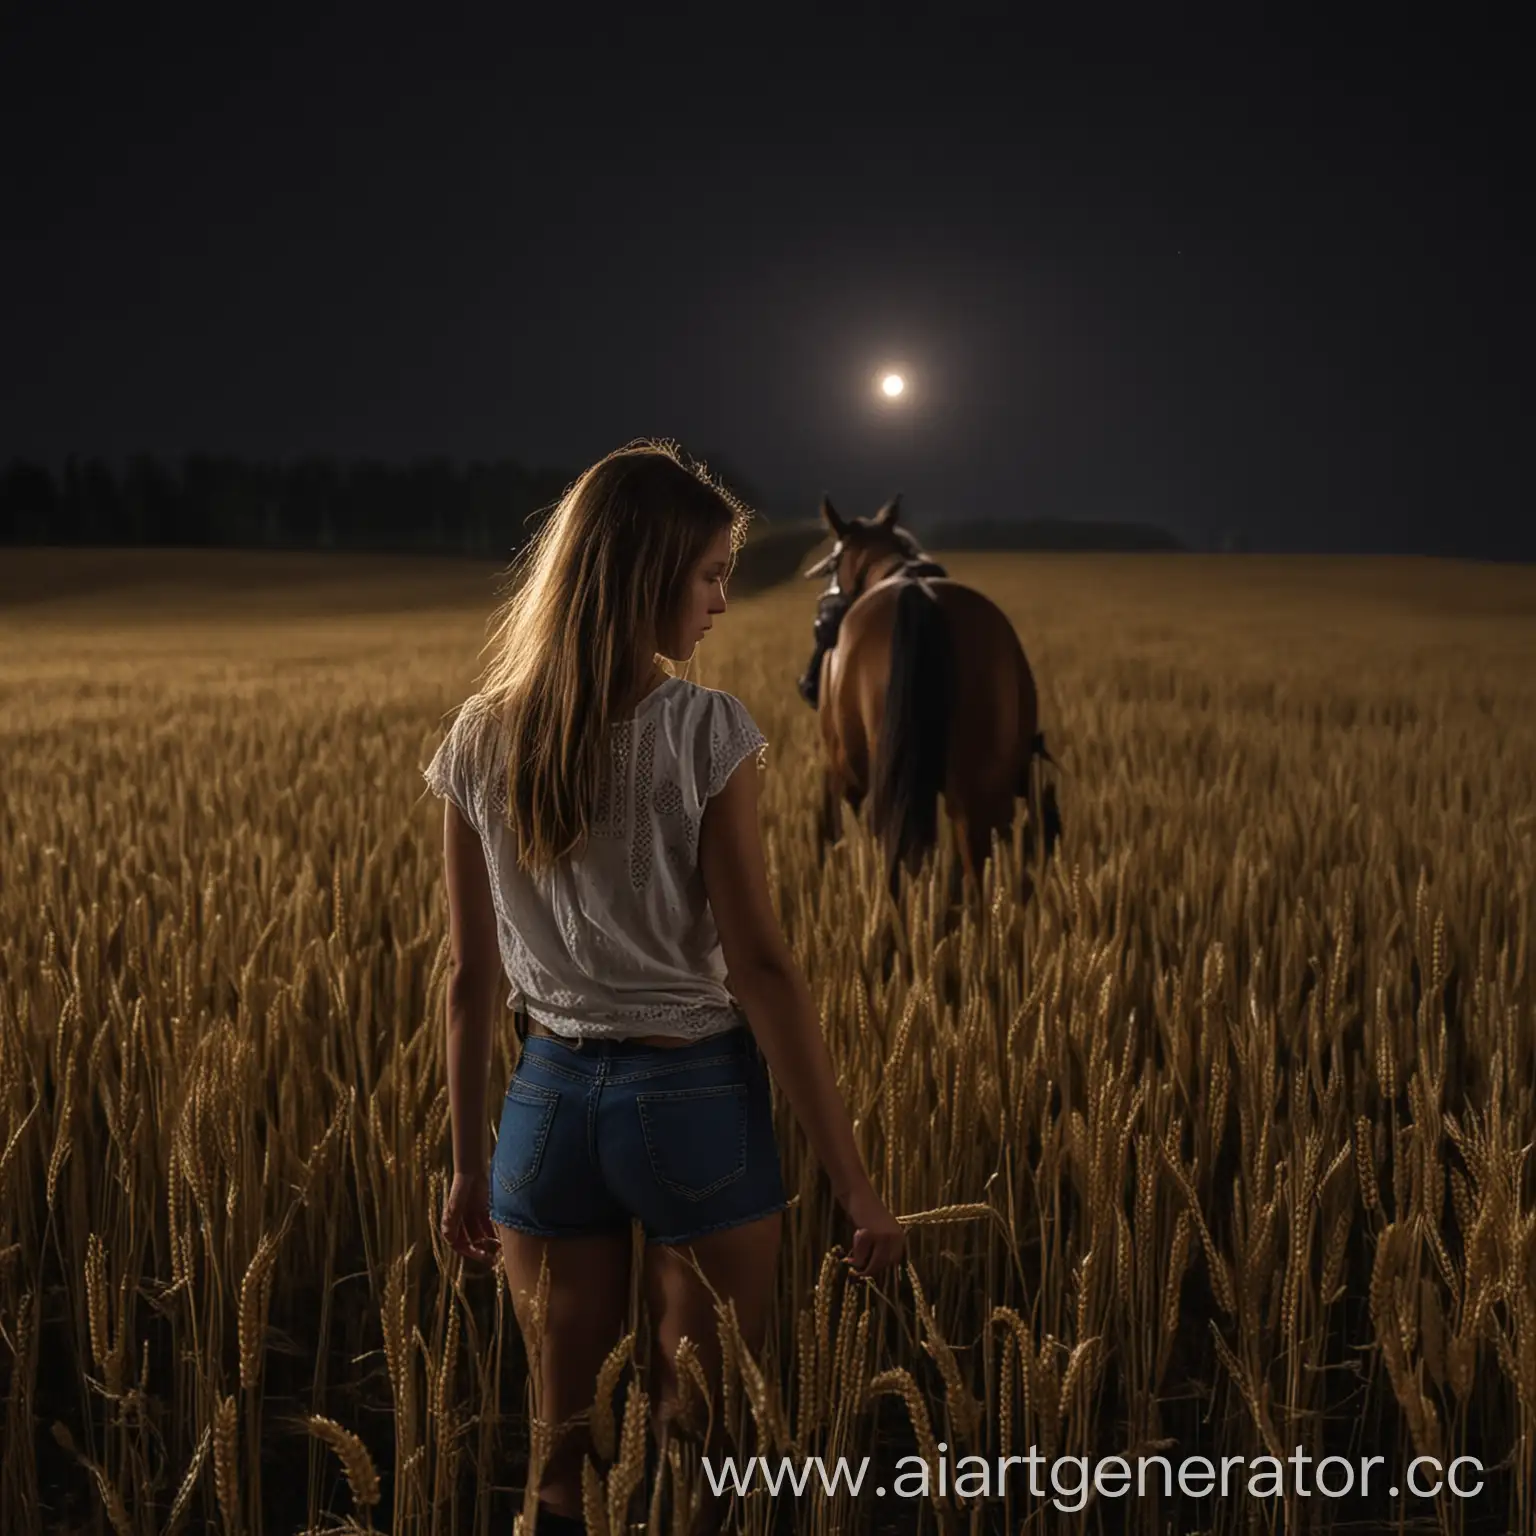 Девушка со спины  конь поле ночь украина пшеница